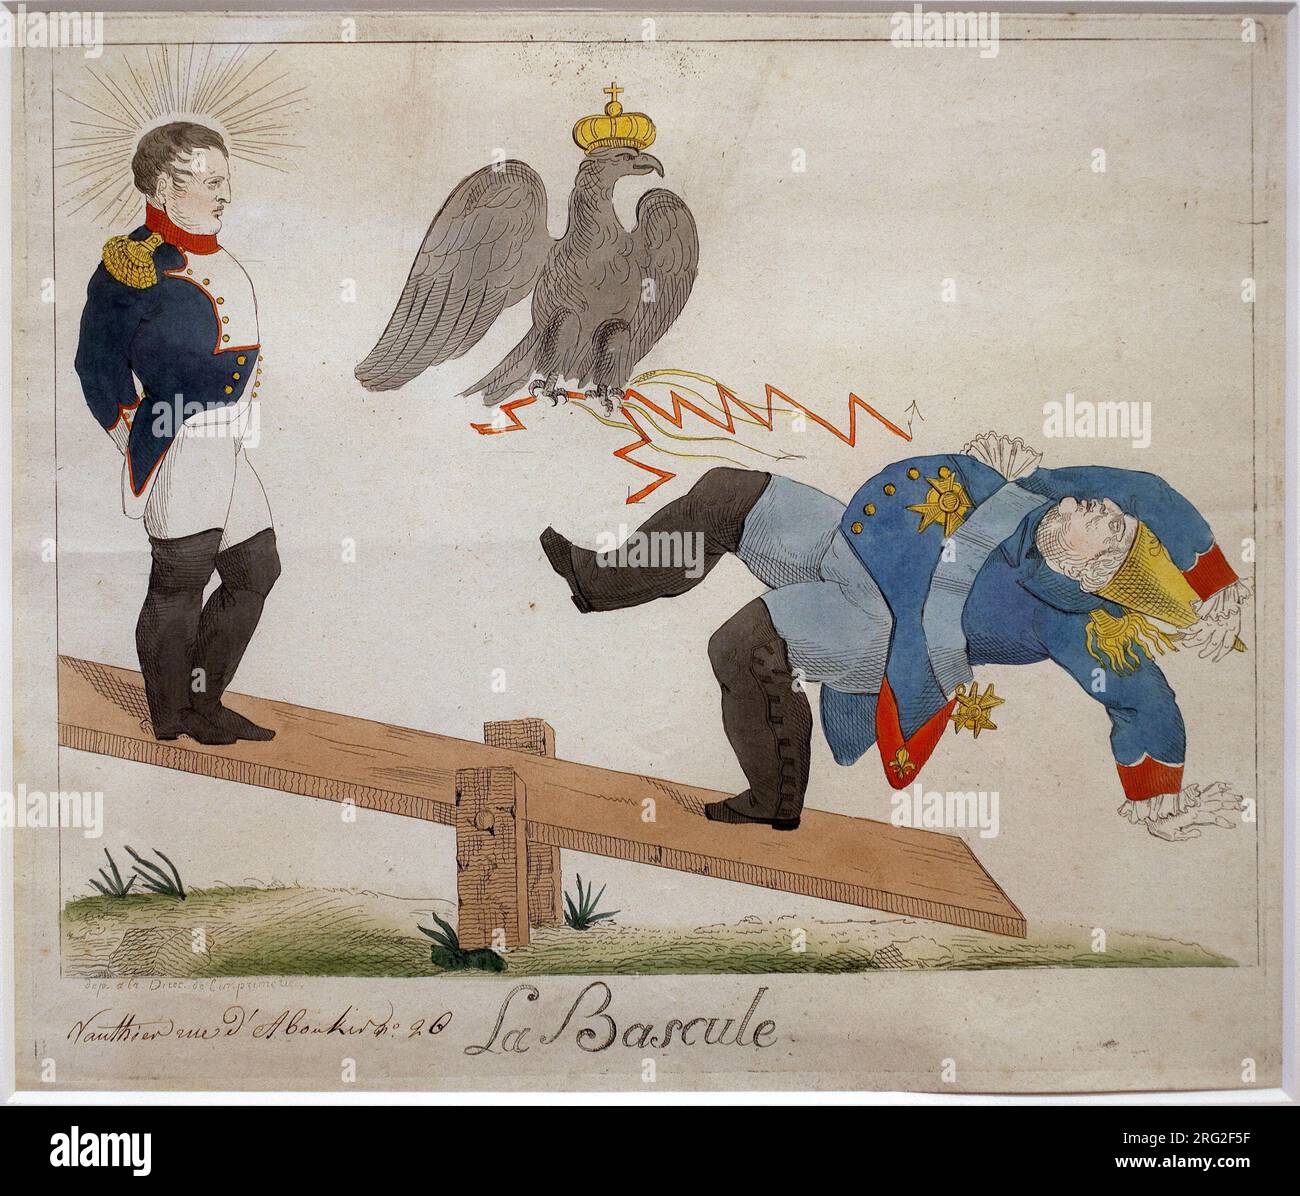 La bascule. Portrait de Napoleon Bonaparte (1769-1821) debout sur une planche a bascule, regardant son ennemi tomber, foudroye par un aigle couronne. Caricature.  Eau forte, debut 19e siecle, Stock Photo